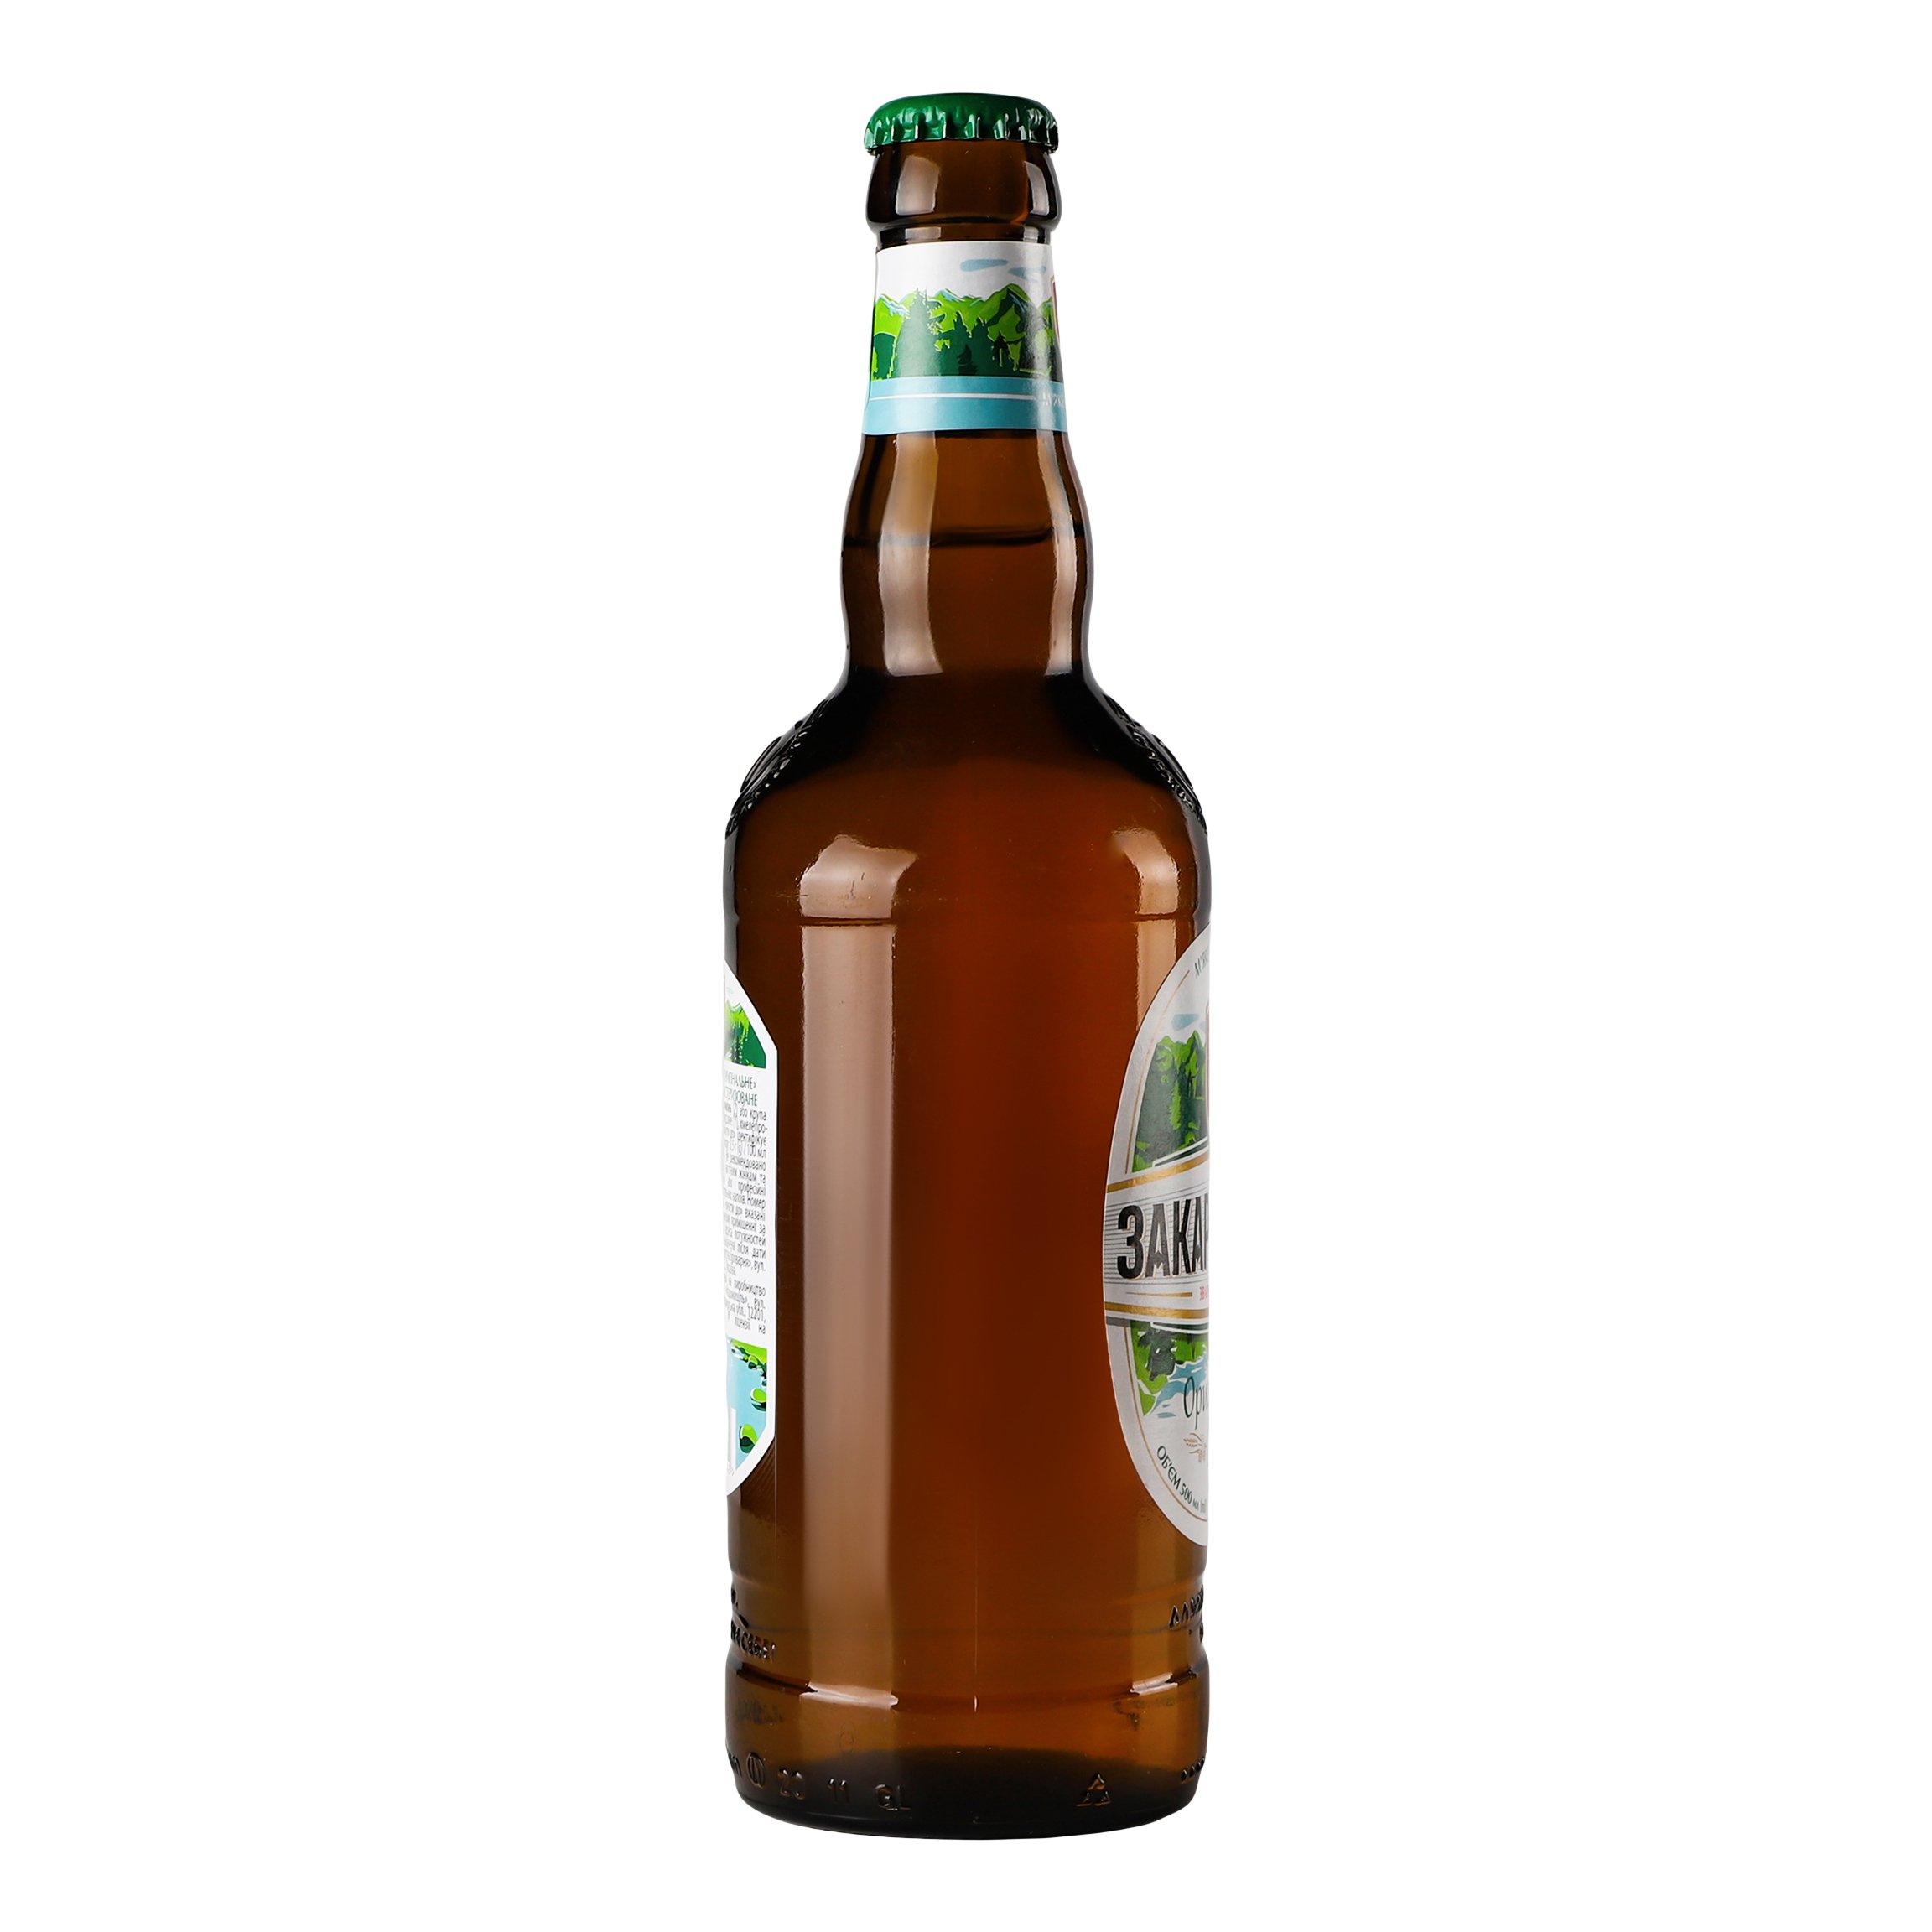 Пиво Перша приватна броварня Закарпатское, светлое, фильтрованное, 4,1%, 0,5 л (660937) - фото 2